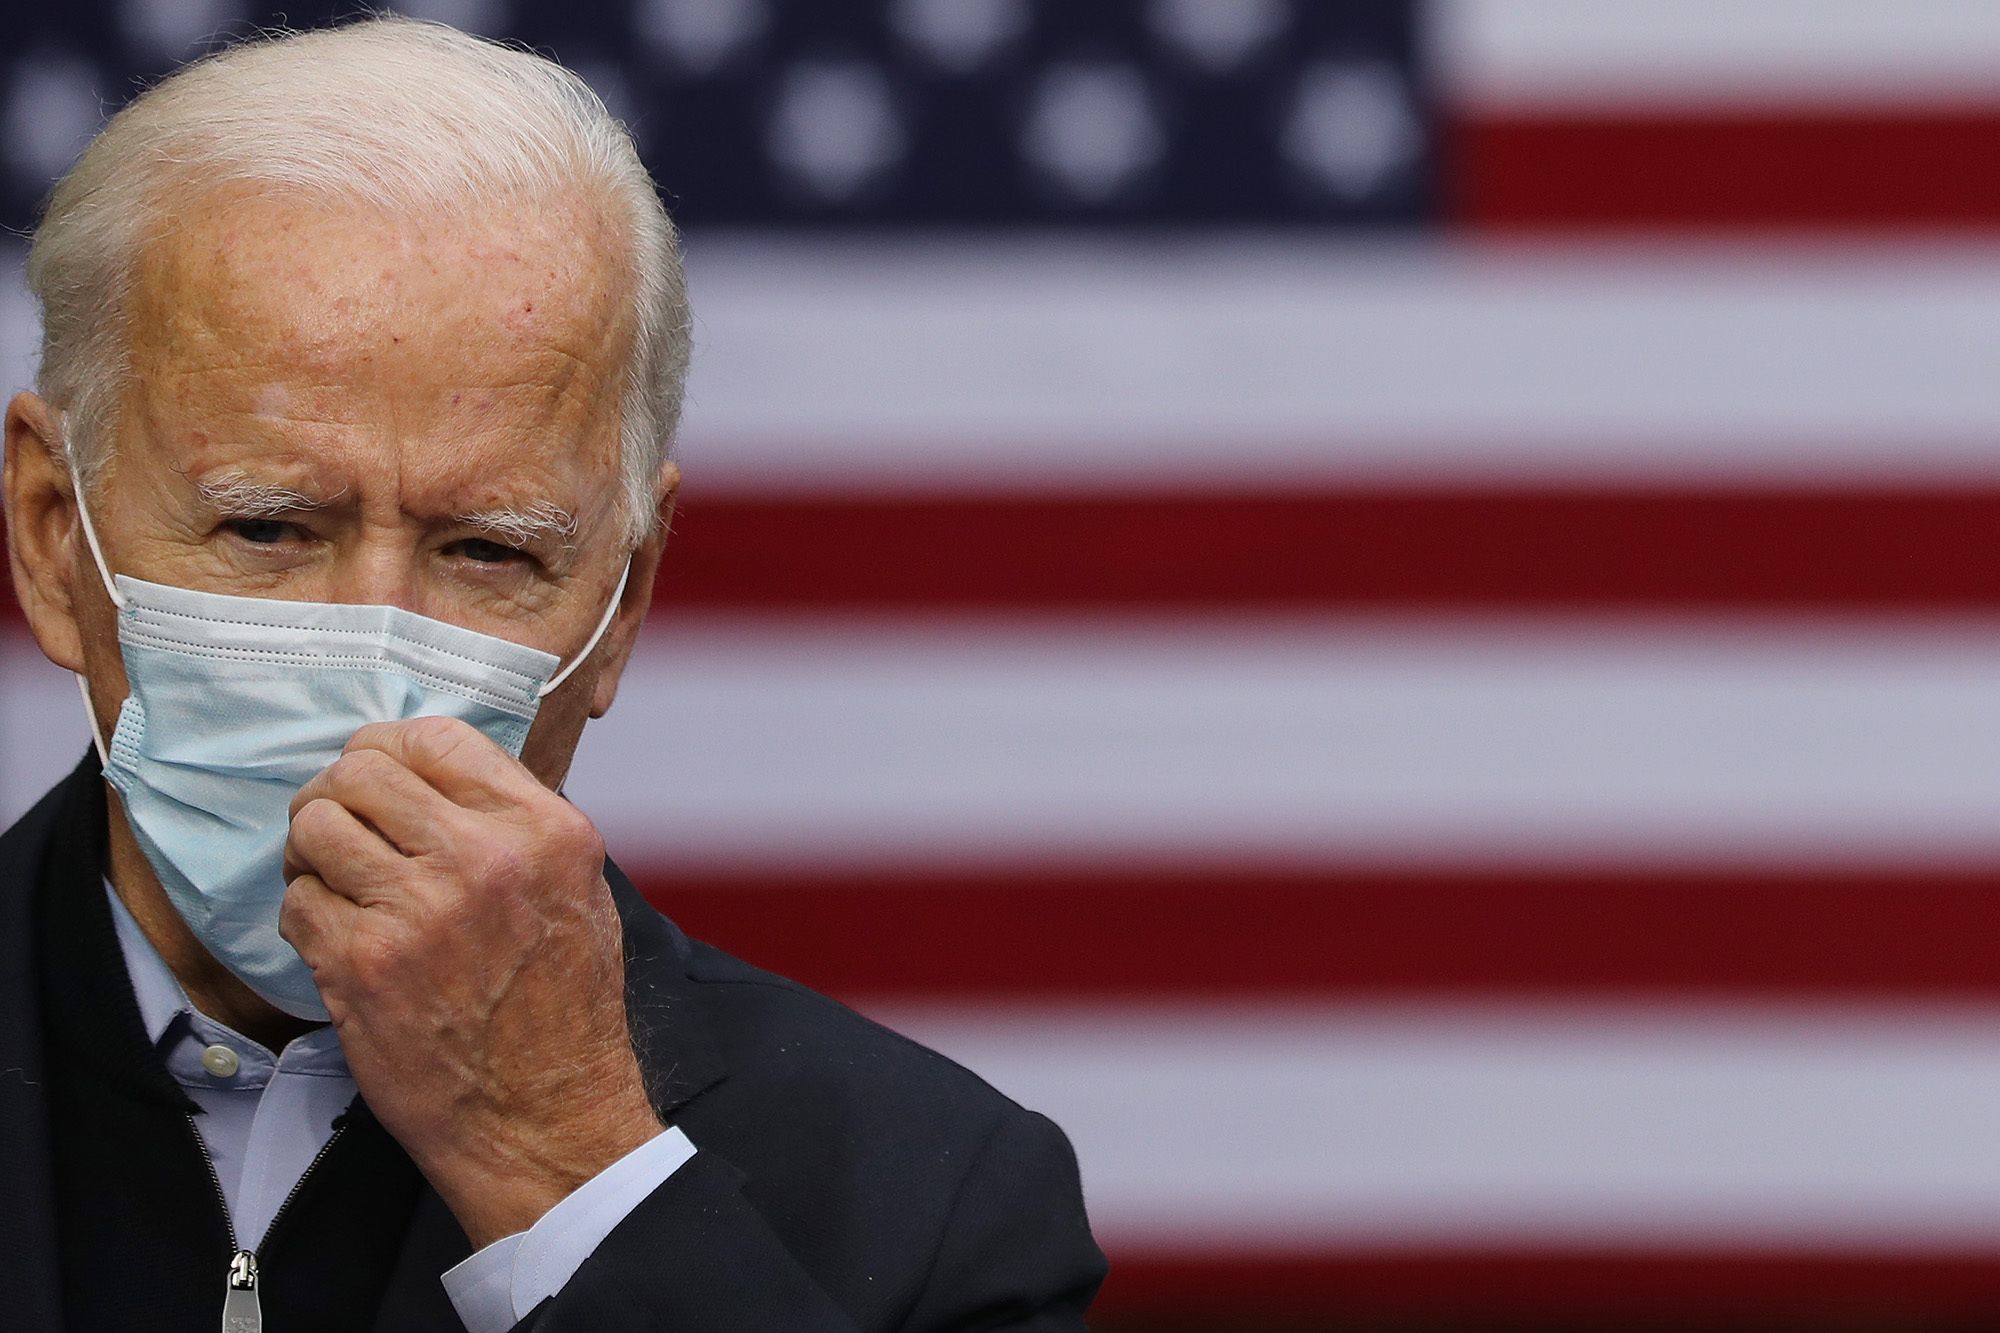 Trump campaign adviser attacks Biden over mask use